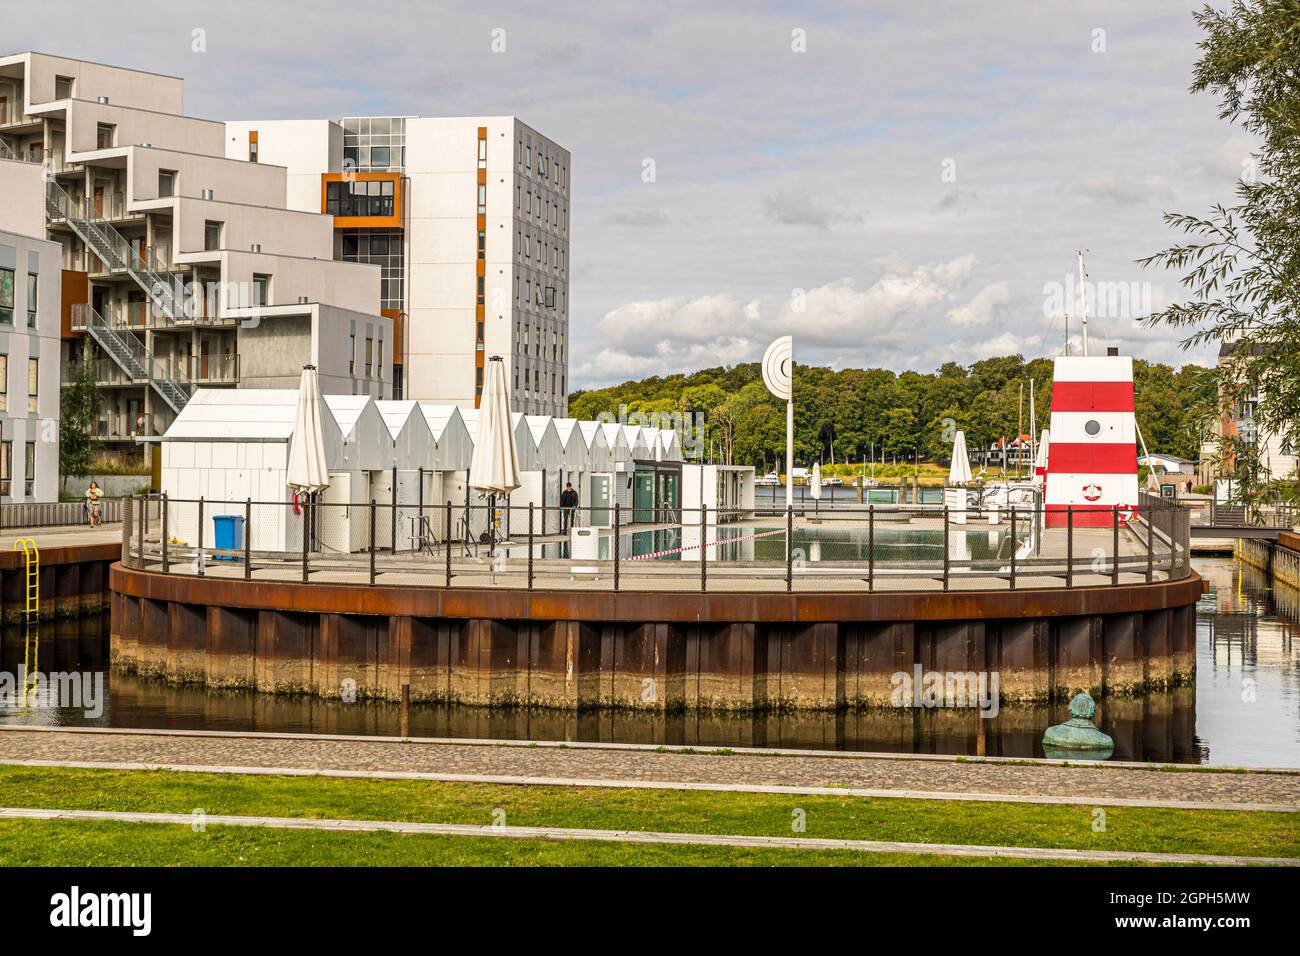 Port of Odense, Denmark Stock Photo